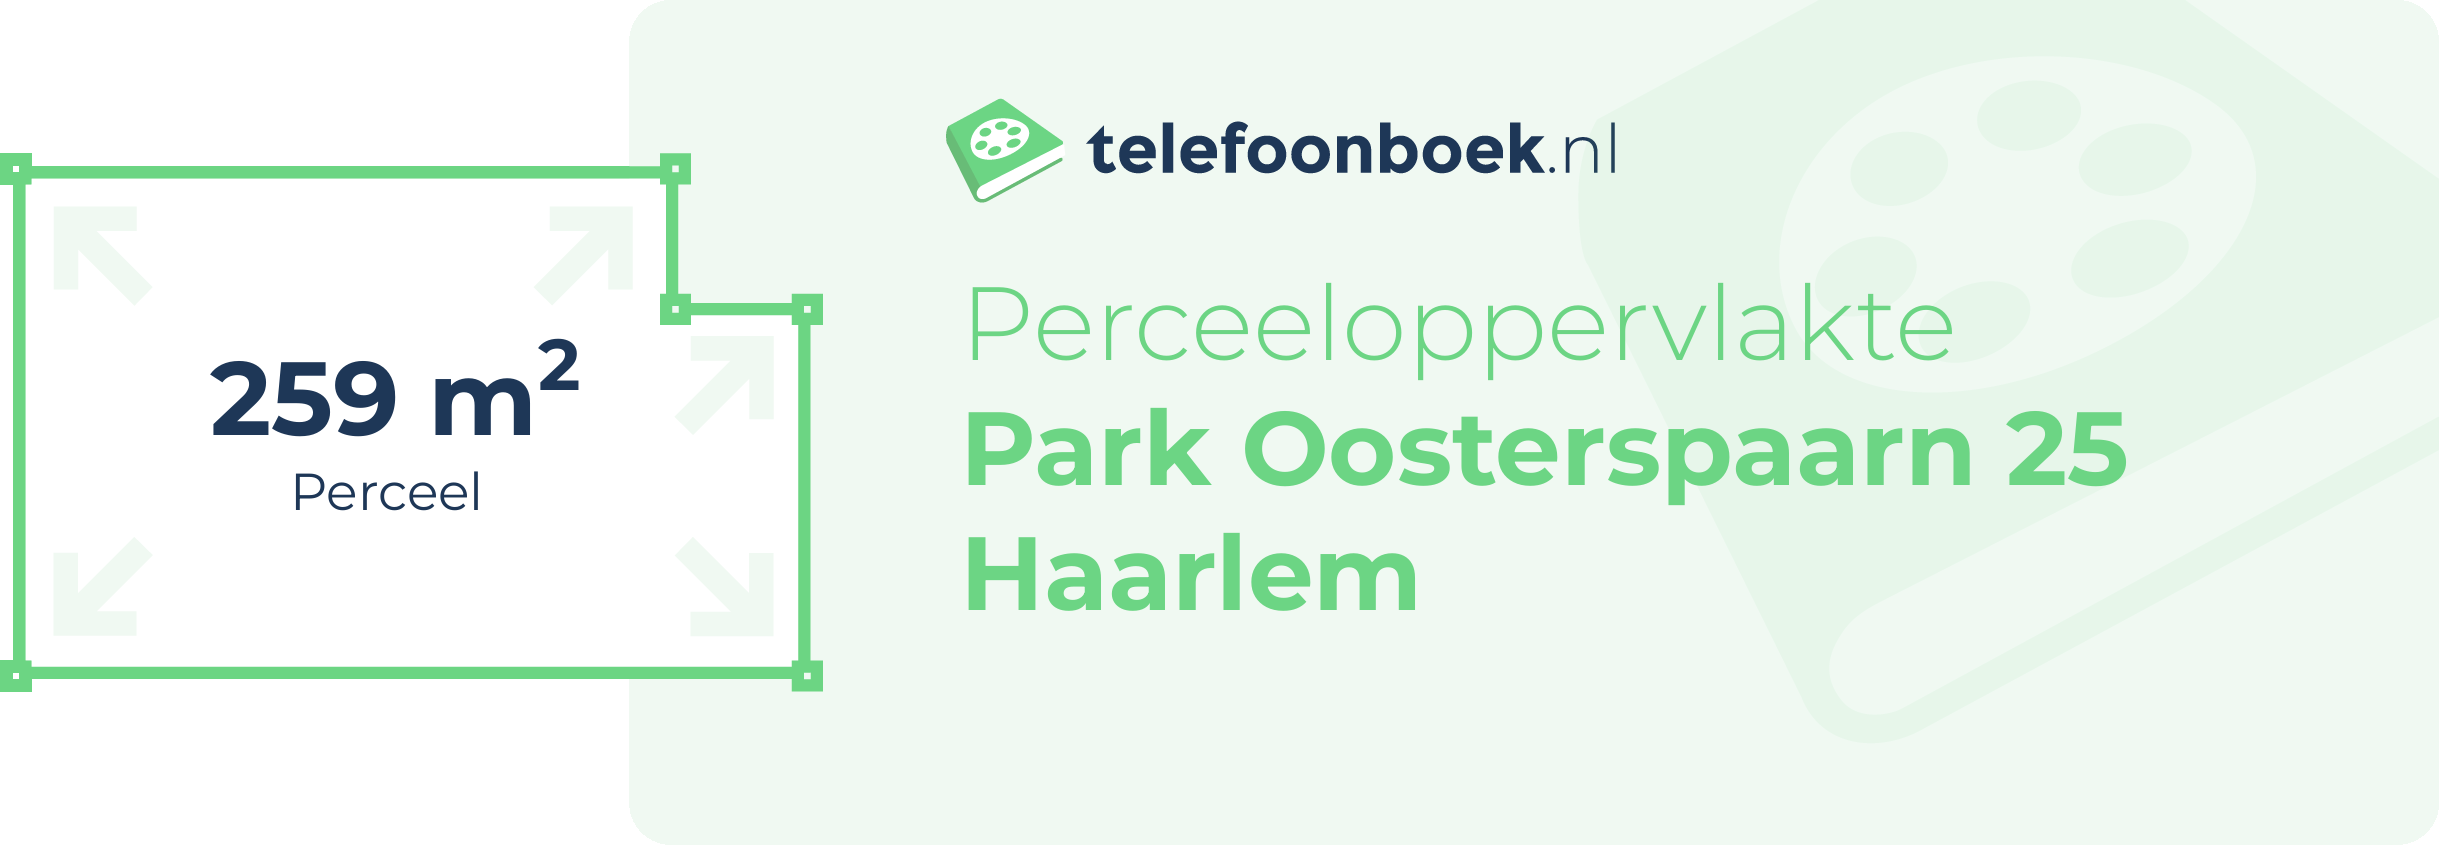 Perceeloppervlakte Park Oosterspaarn 25 Haarlem